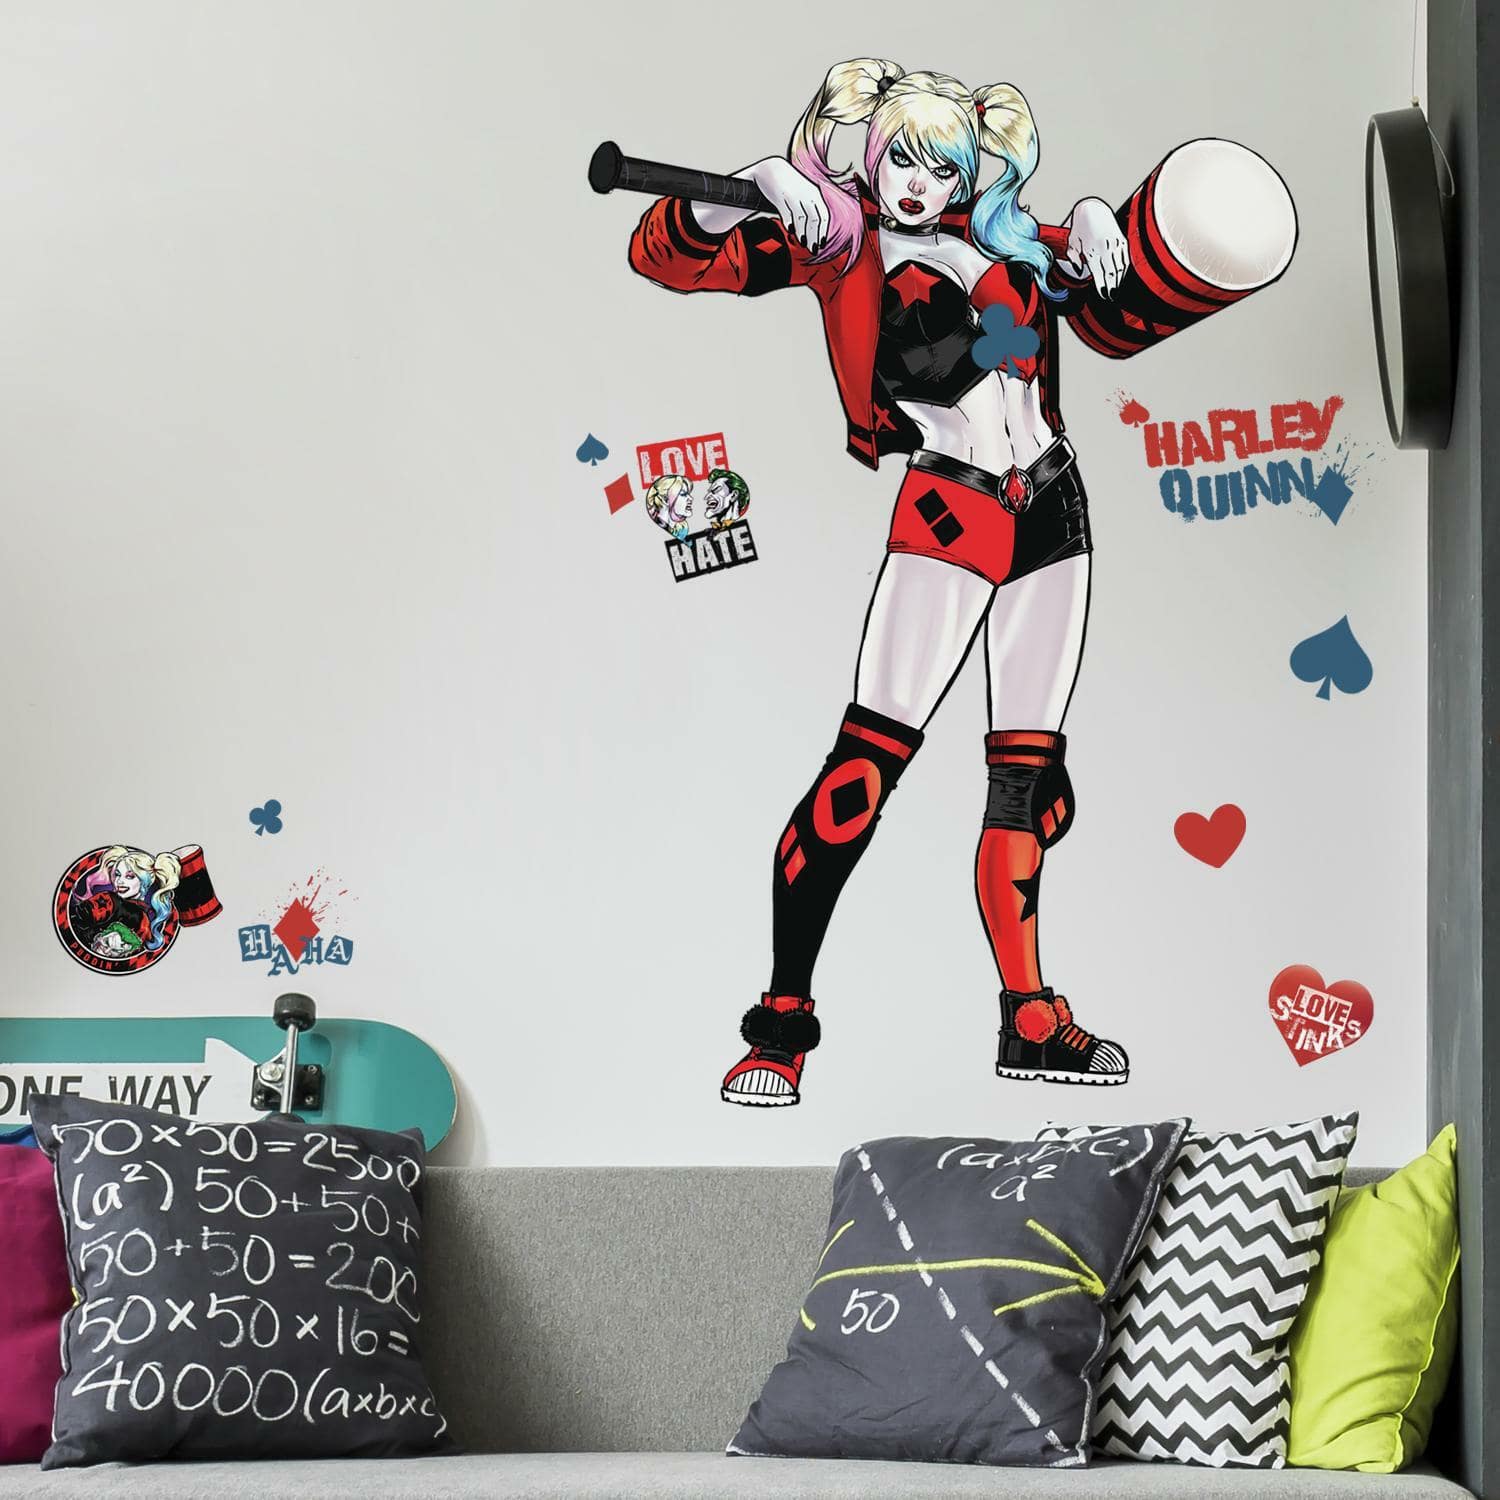 Harley Quinn 3D Wall Sticker 